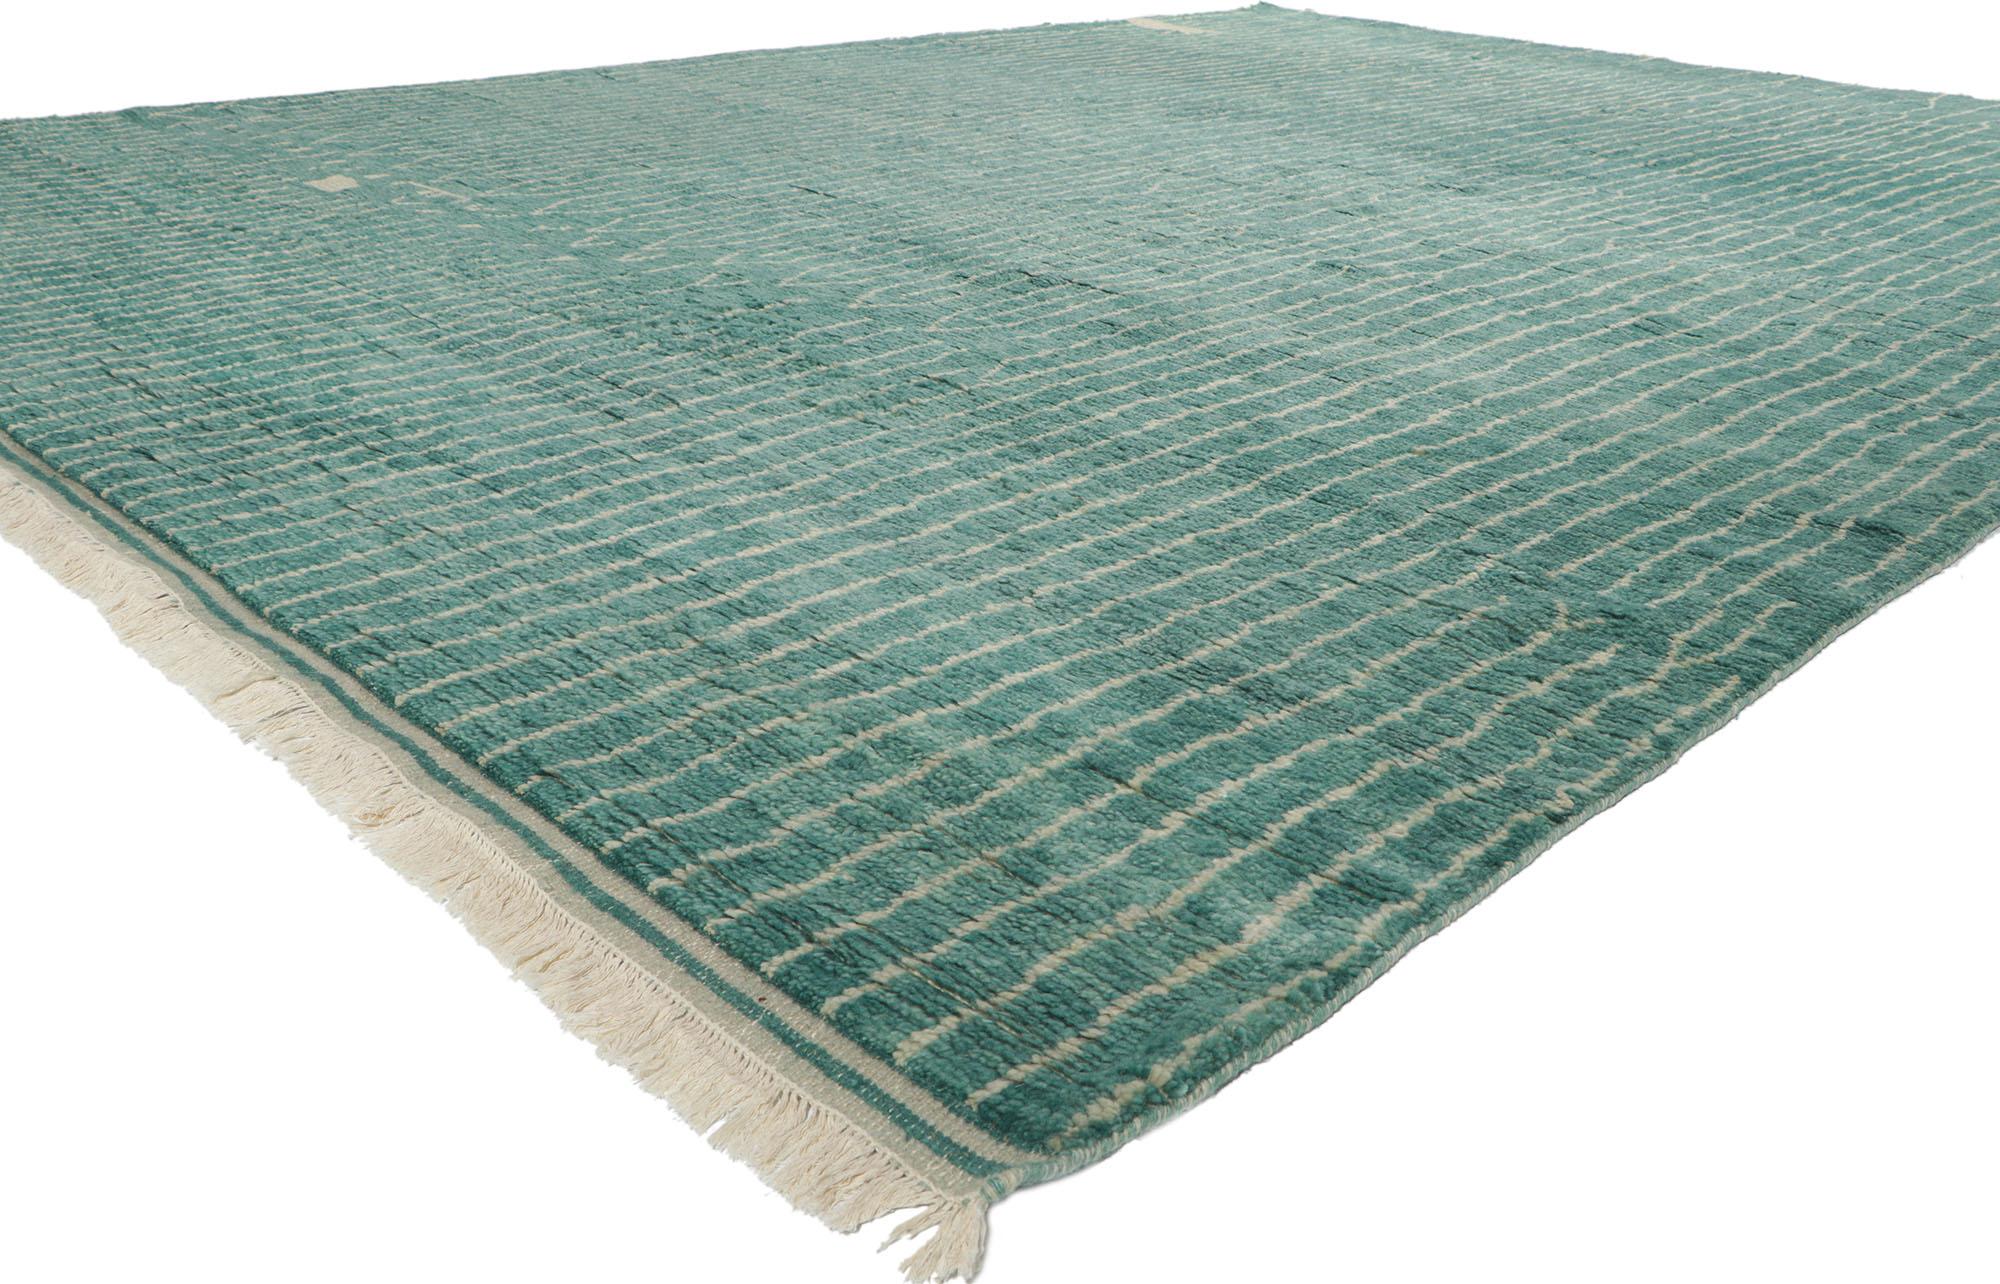 30772 New Contemporary Moroccan Style Rug 10'03 x 13'08. Ce tapis contemporain de style marocain, en laine nouée à la main, est une vision captivante de la beauté tissée. Il évoque un chalet côtier avec des couleurs qui rappellent le verre de mer et